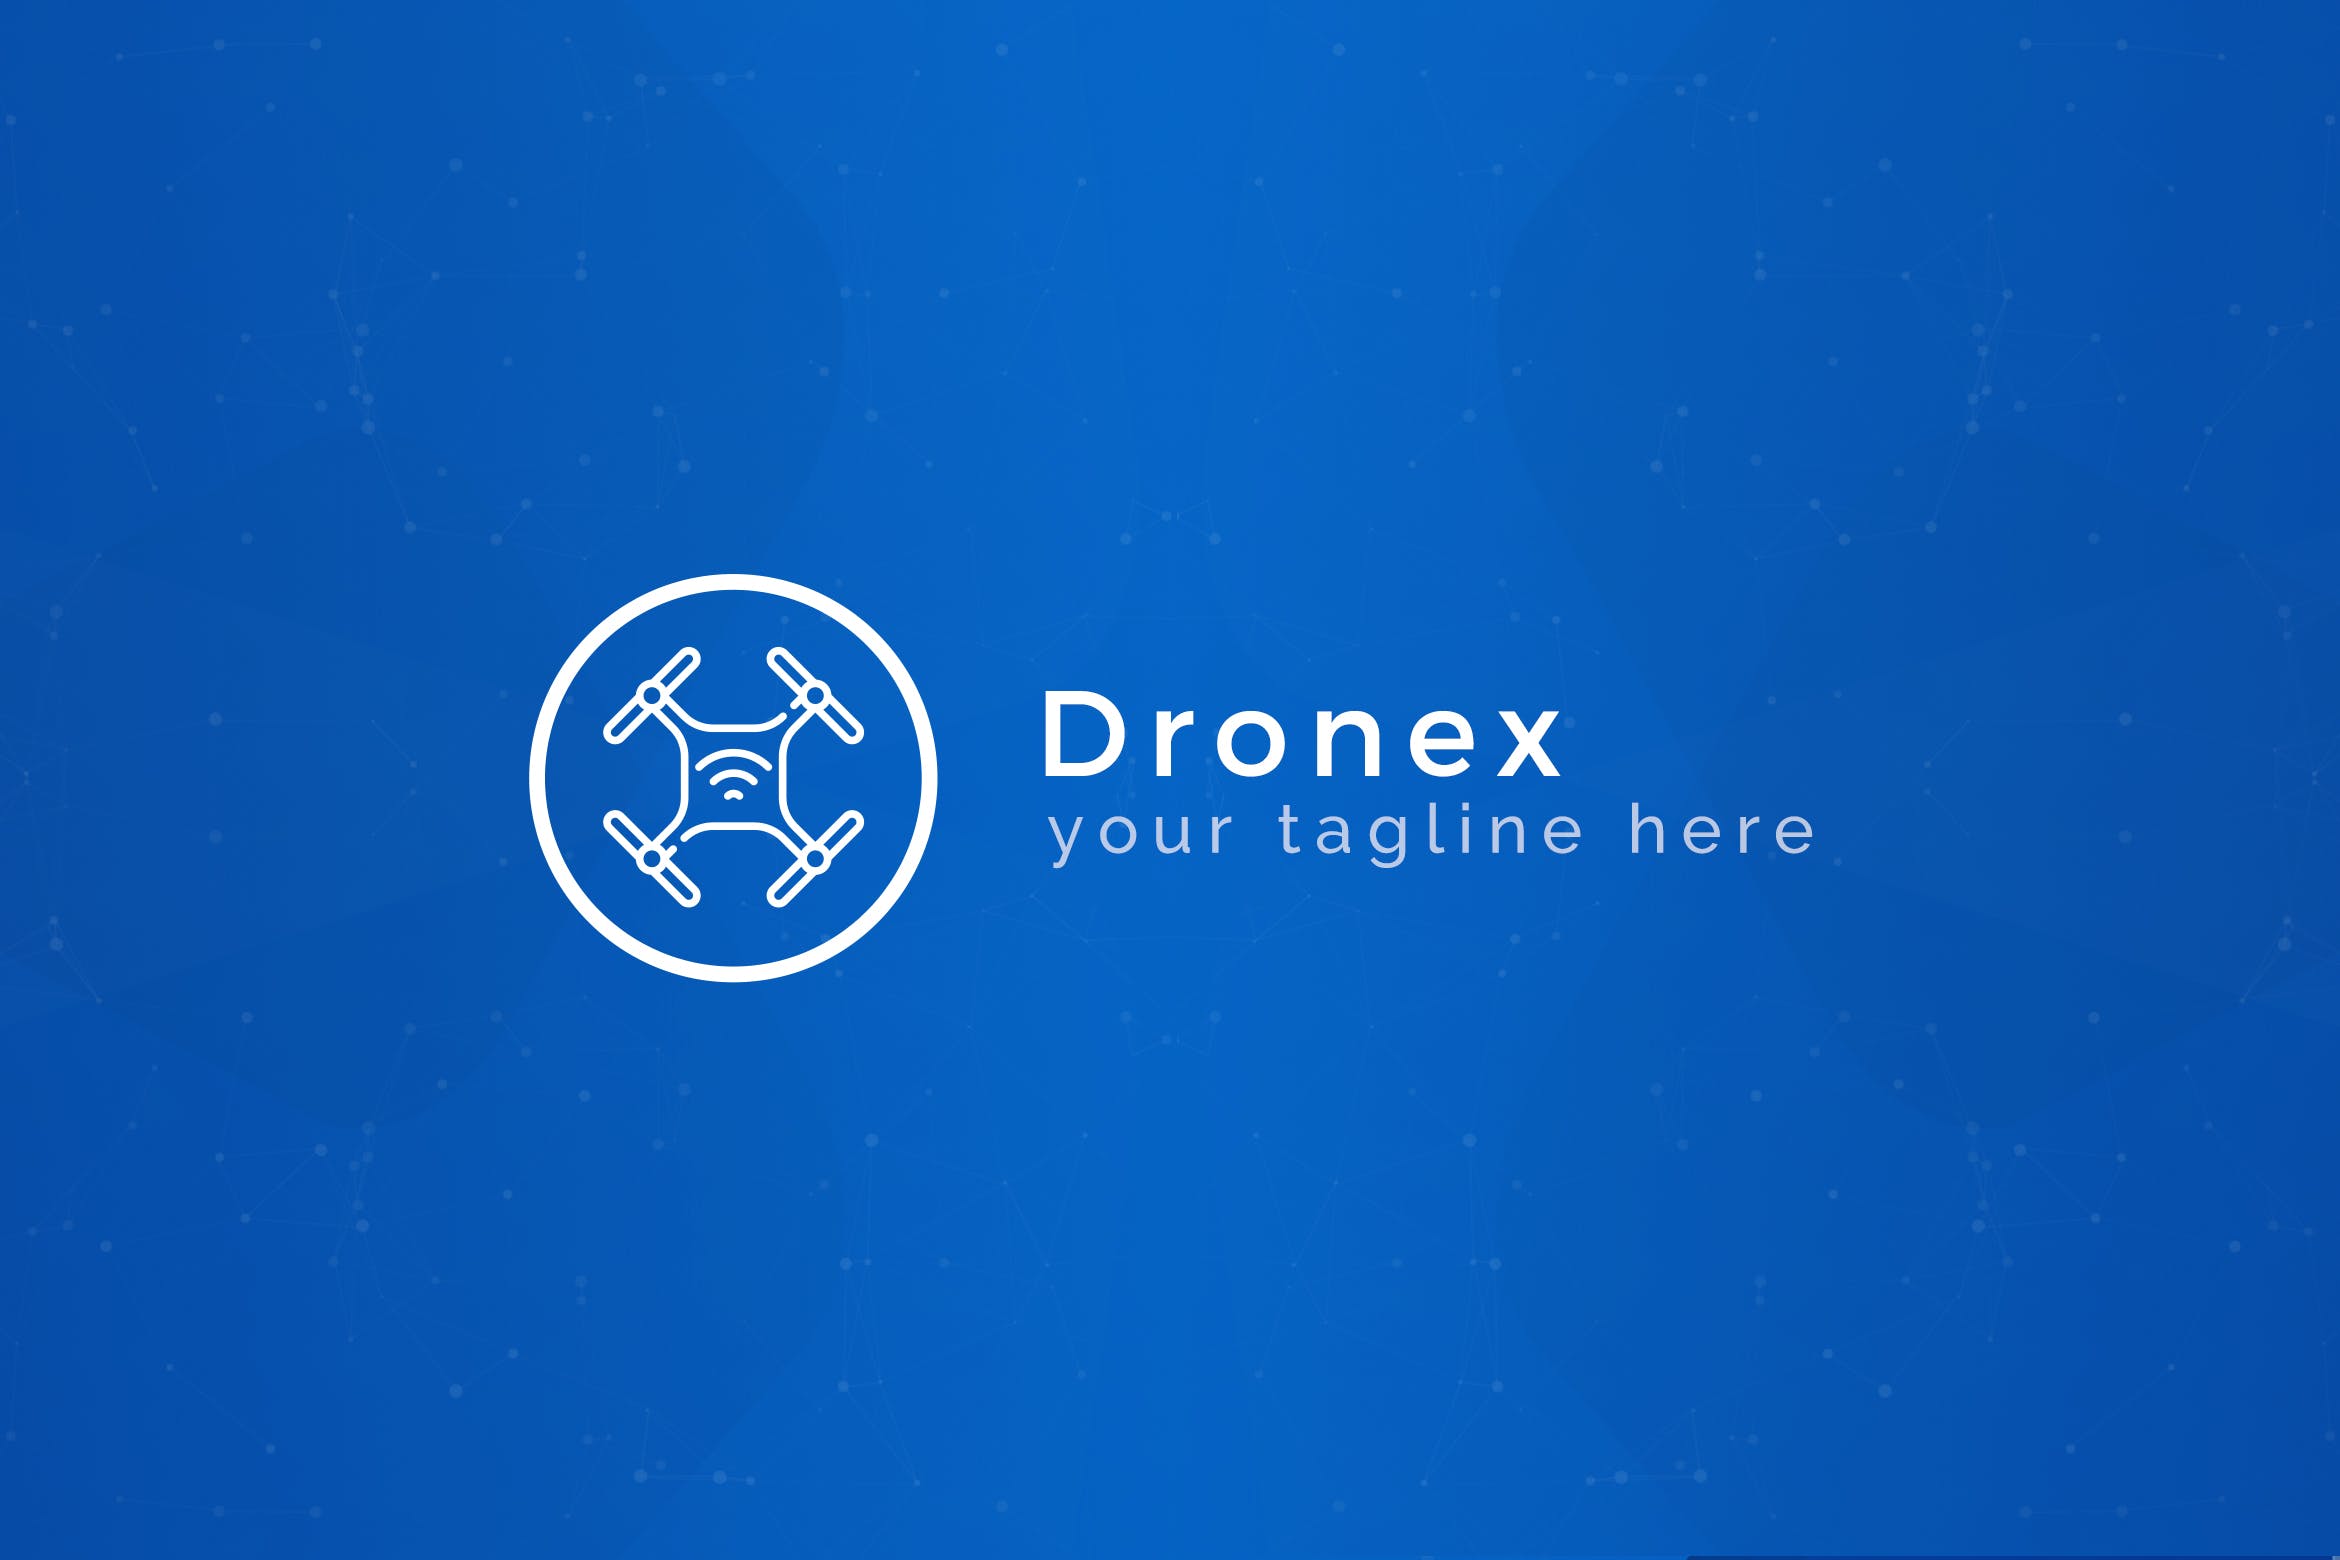 无人机品牌Logo设计素材库精选模板 Dronex – Premium Drone Logo Template插图